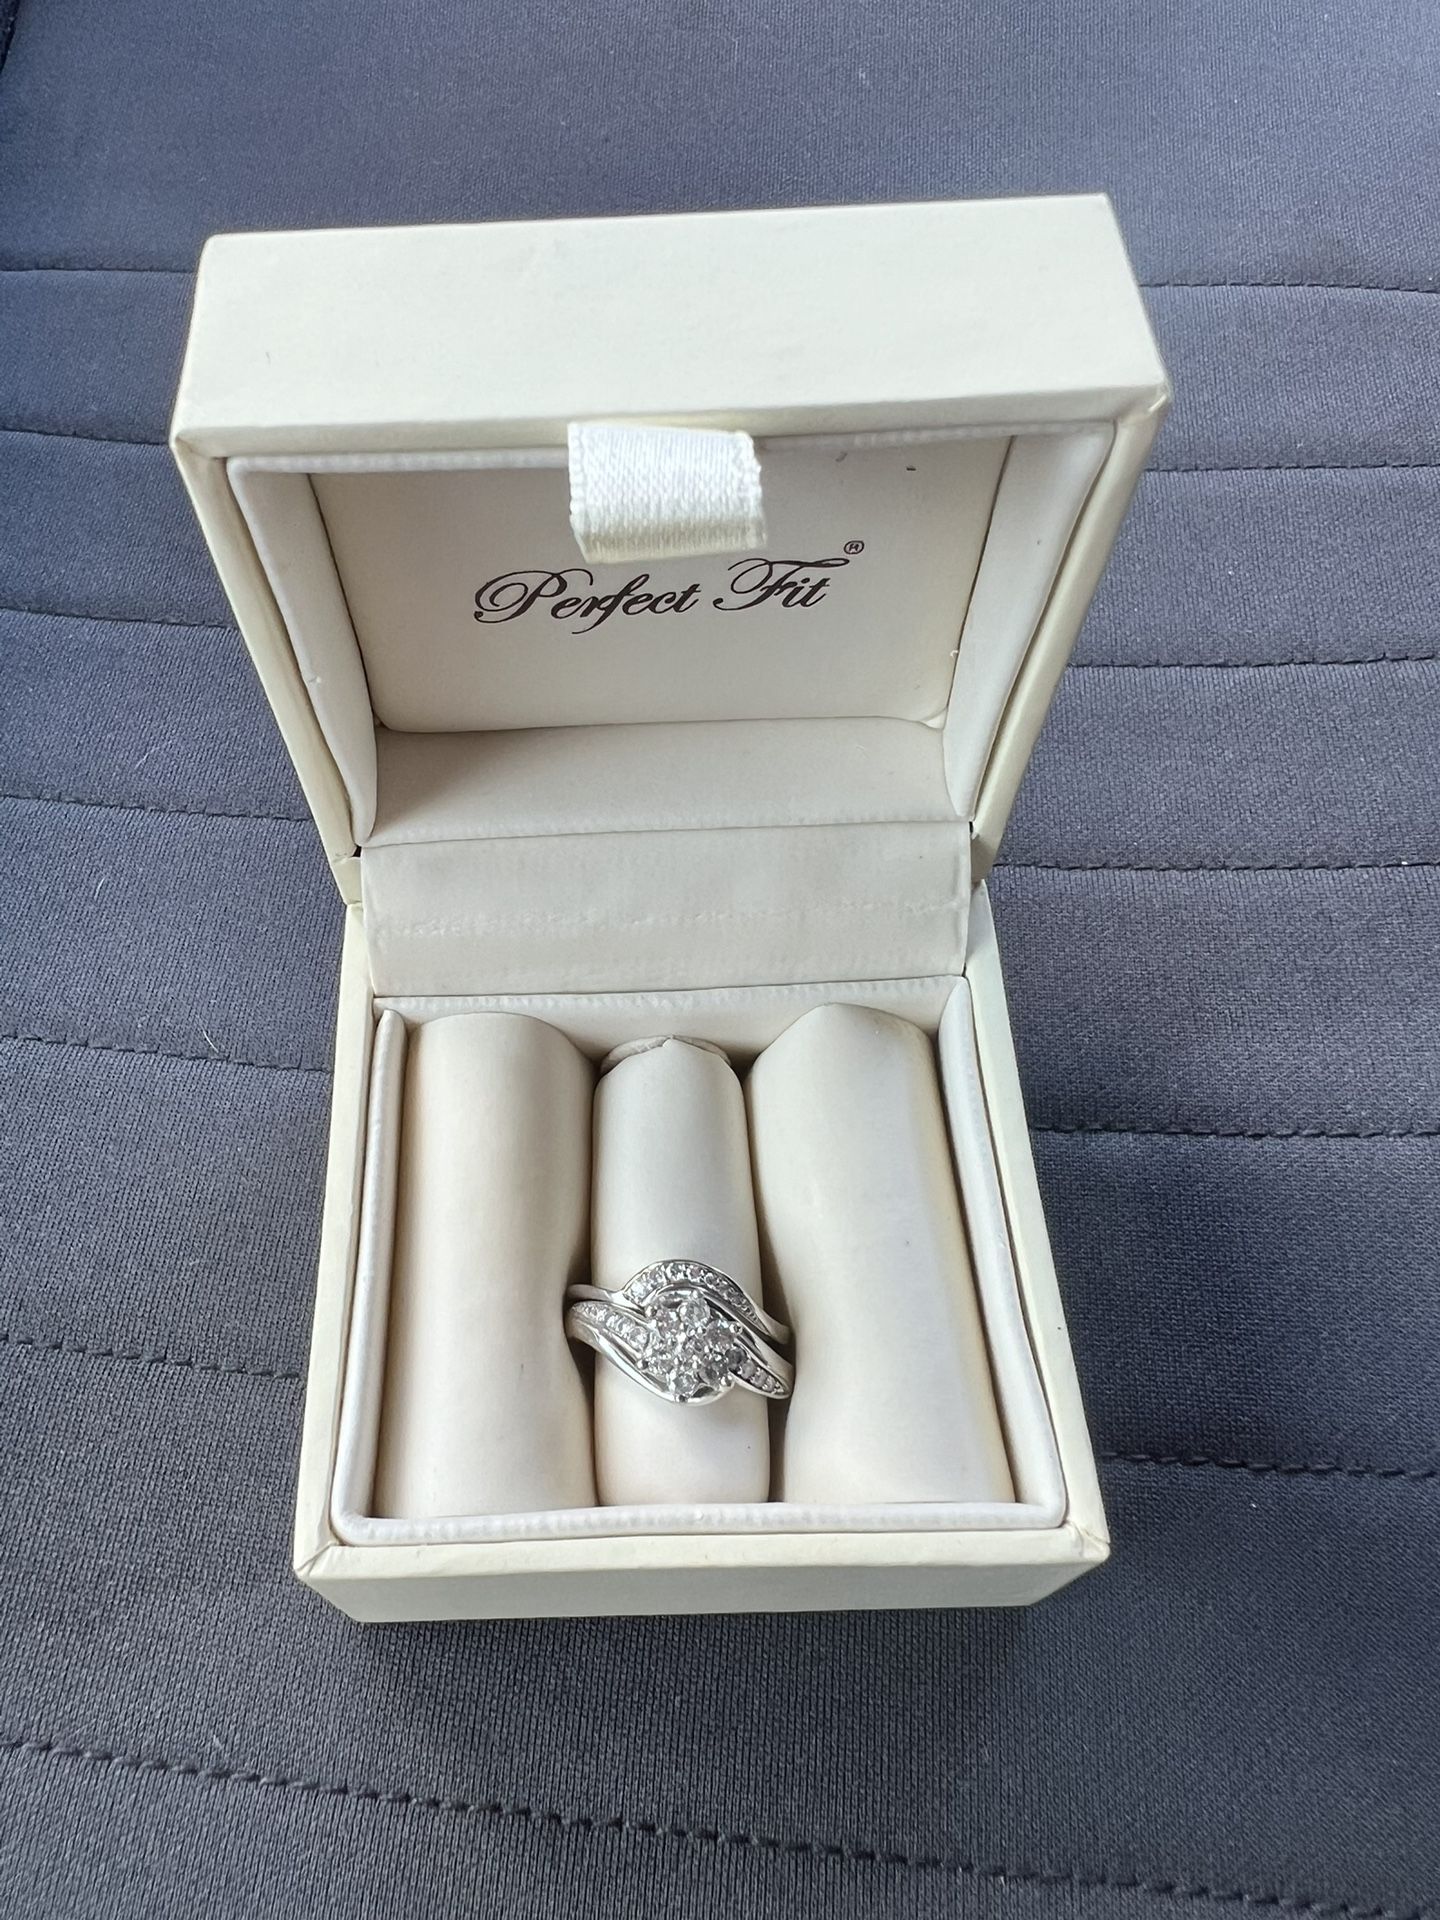 Wedding Ring Set